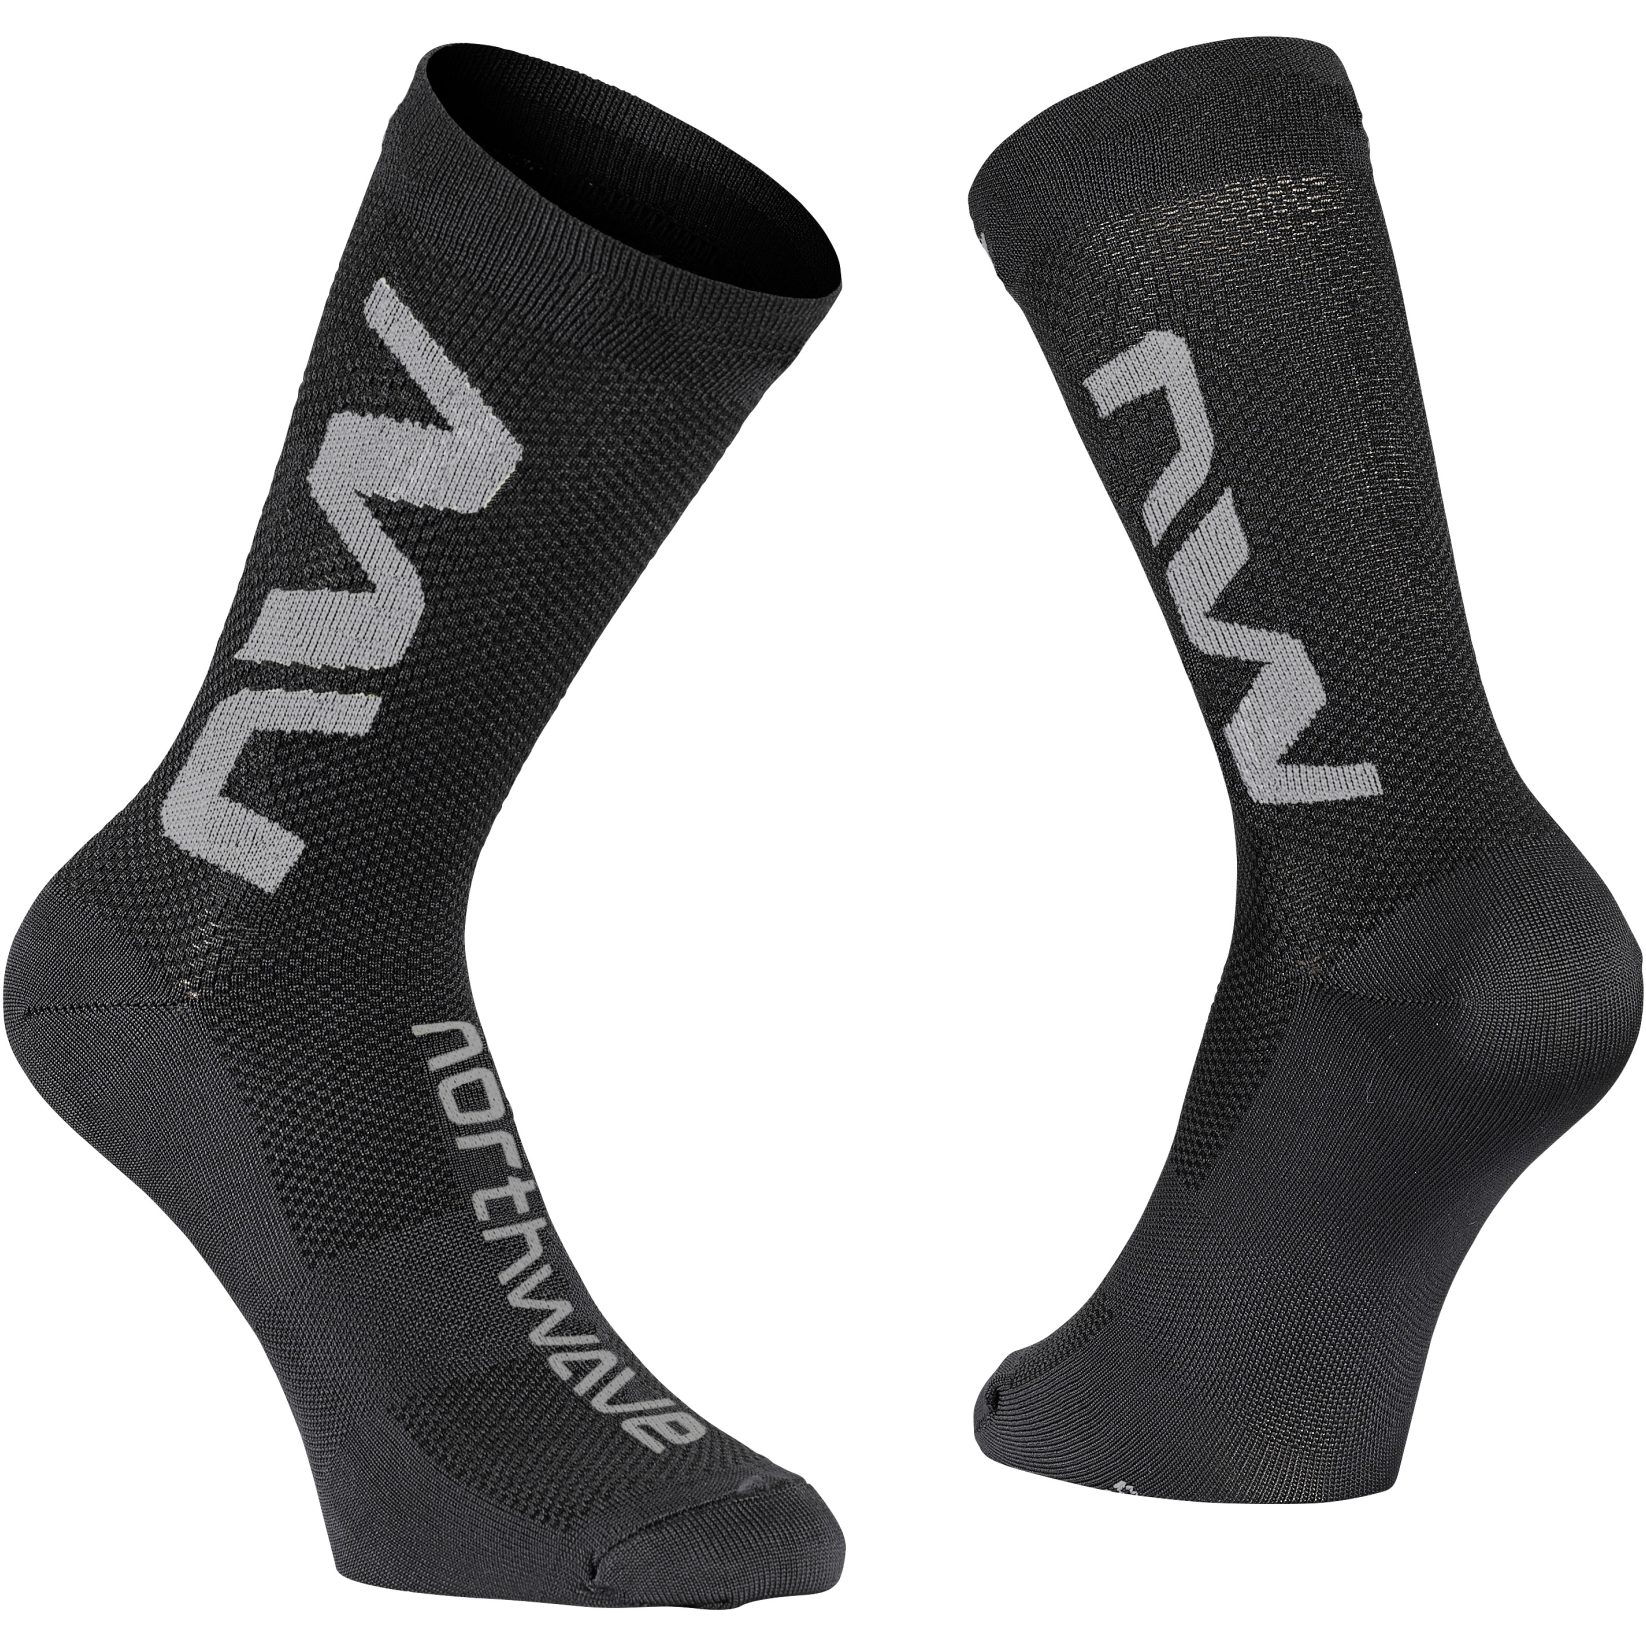 Produktbild von Northwave Extreme Air Socken - schwarz/grau 07